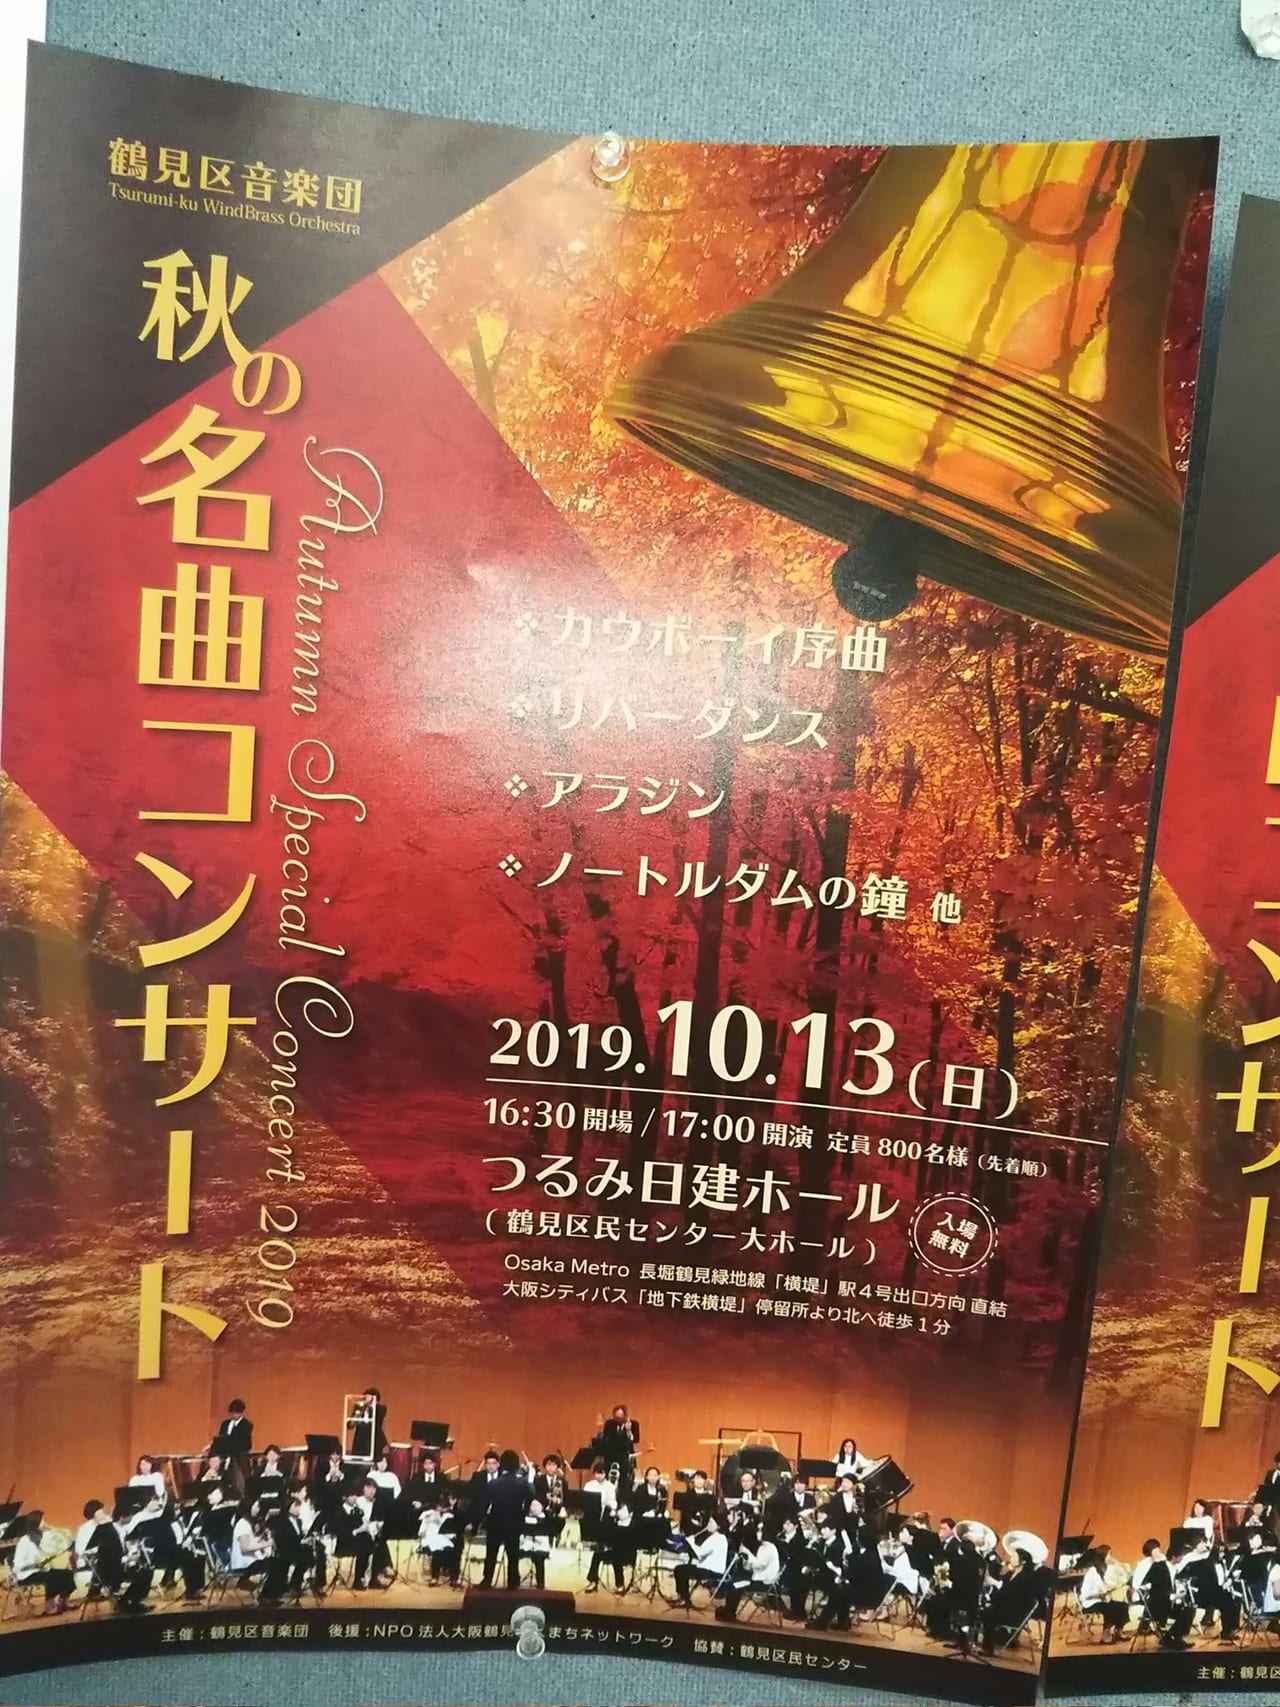 大阪市鶴見区 秋の夜長のお楽しみ 秋の名曲コンサート が10月13日に開催されます 号外net 鶴見 城東